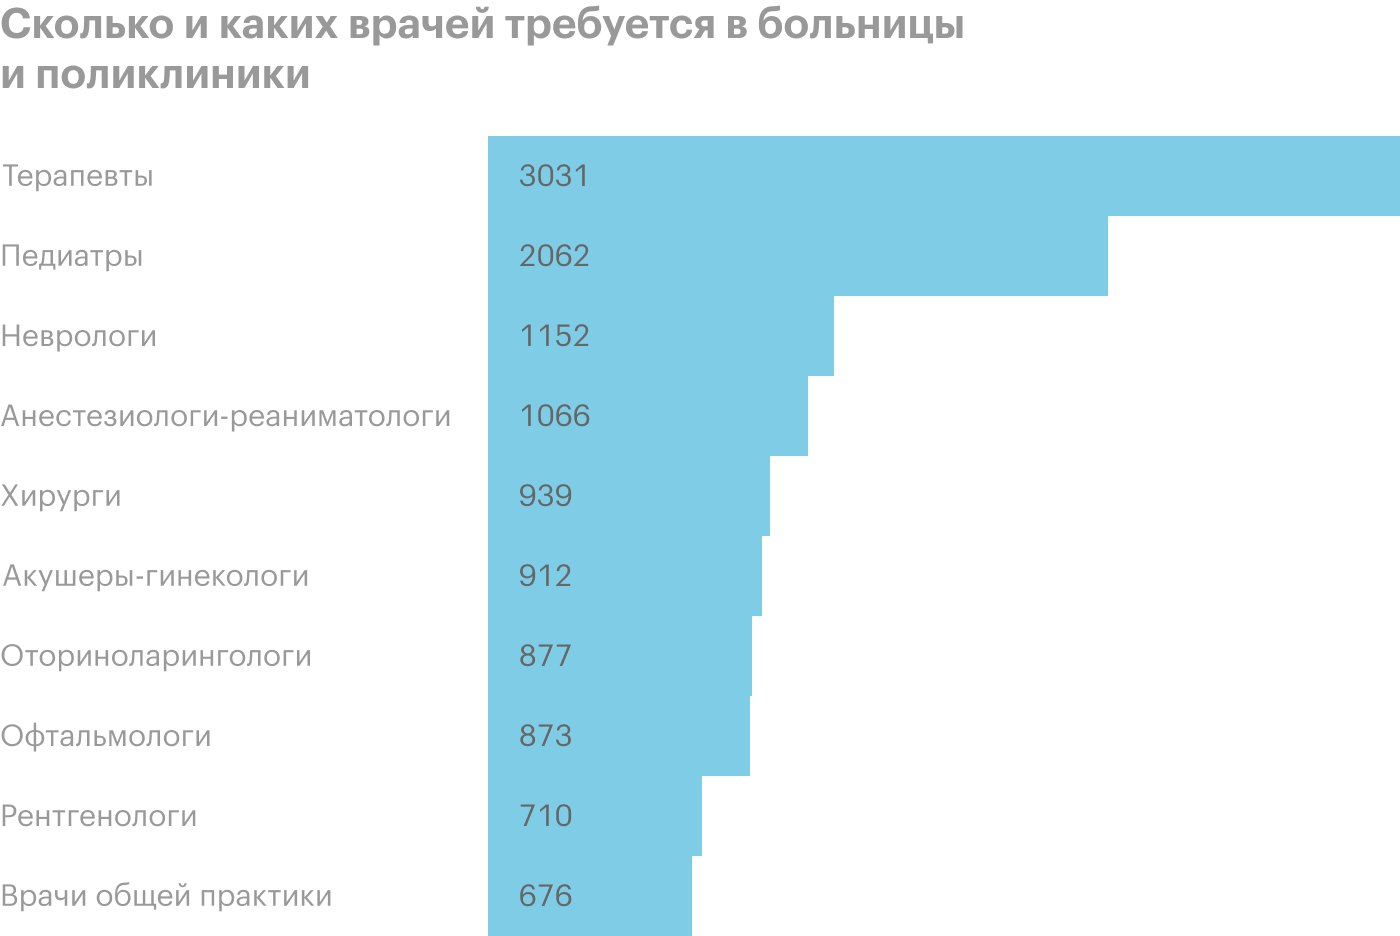 Количество врачей в поликлиниках. Зарплата врача терапевта в России. Сколько получают медики. Зарплата врачей по странам. Сколько и какие специальности врачей зарабатывают.